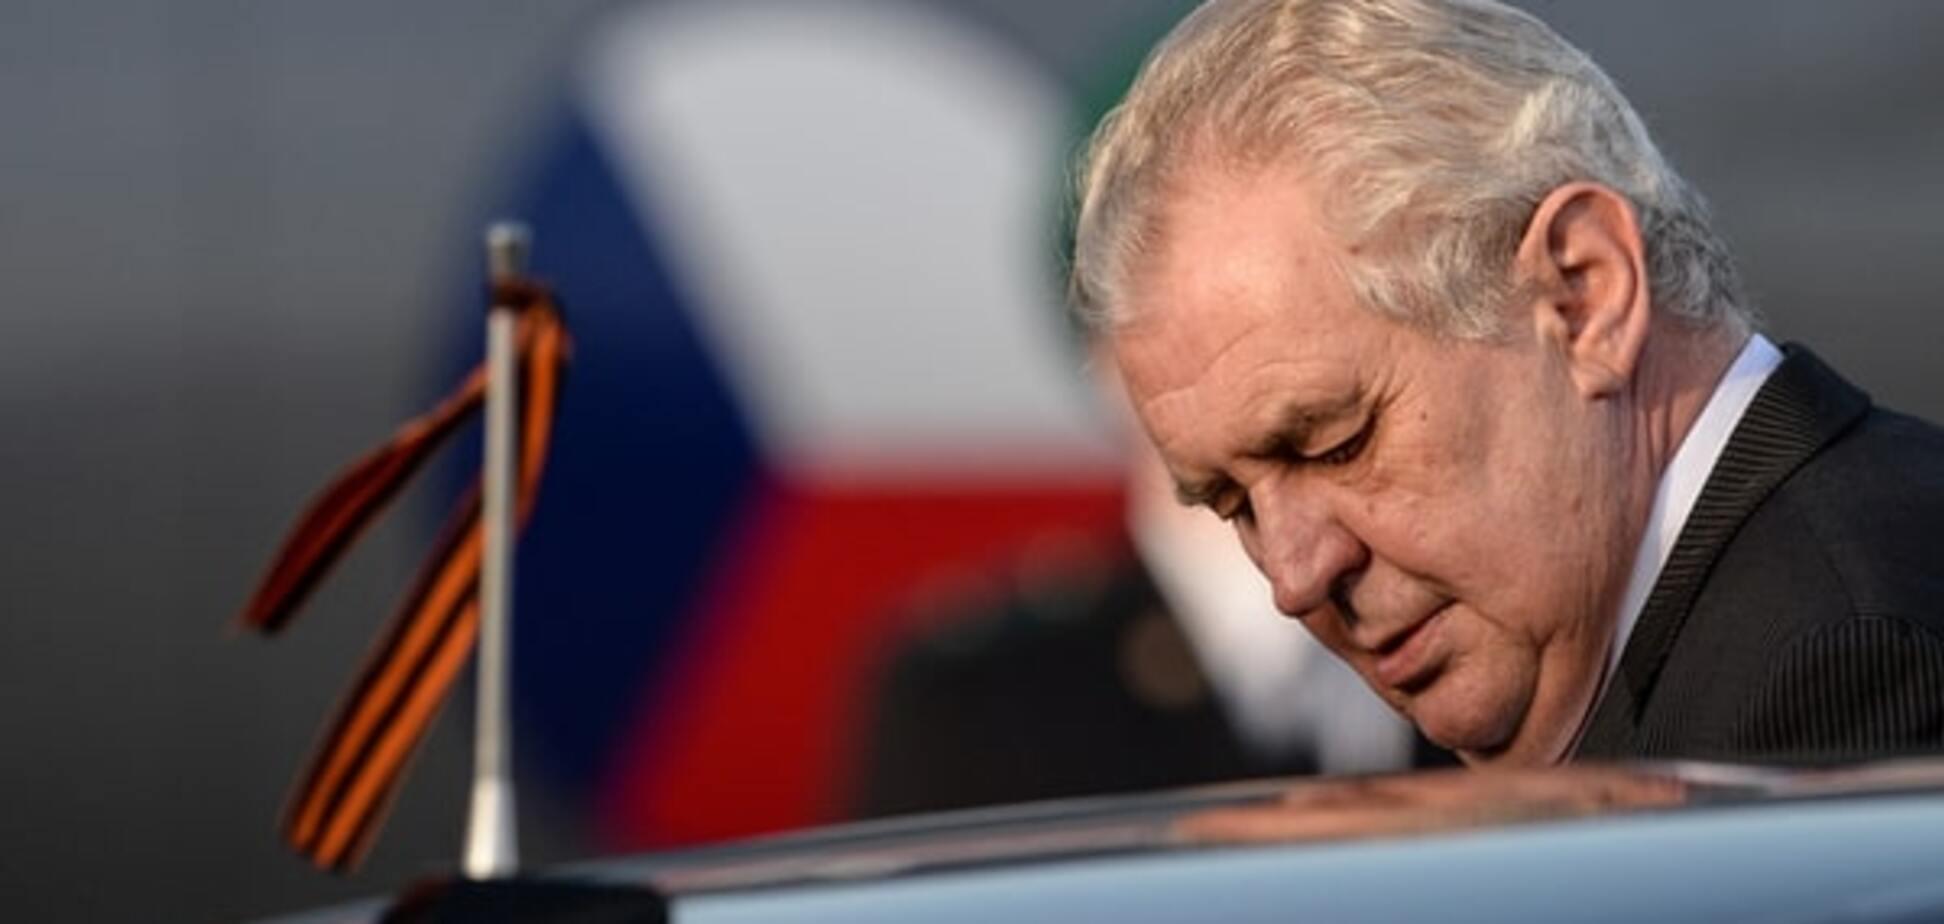 Чешский президент отметил день рождения по-русски: видеофакт